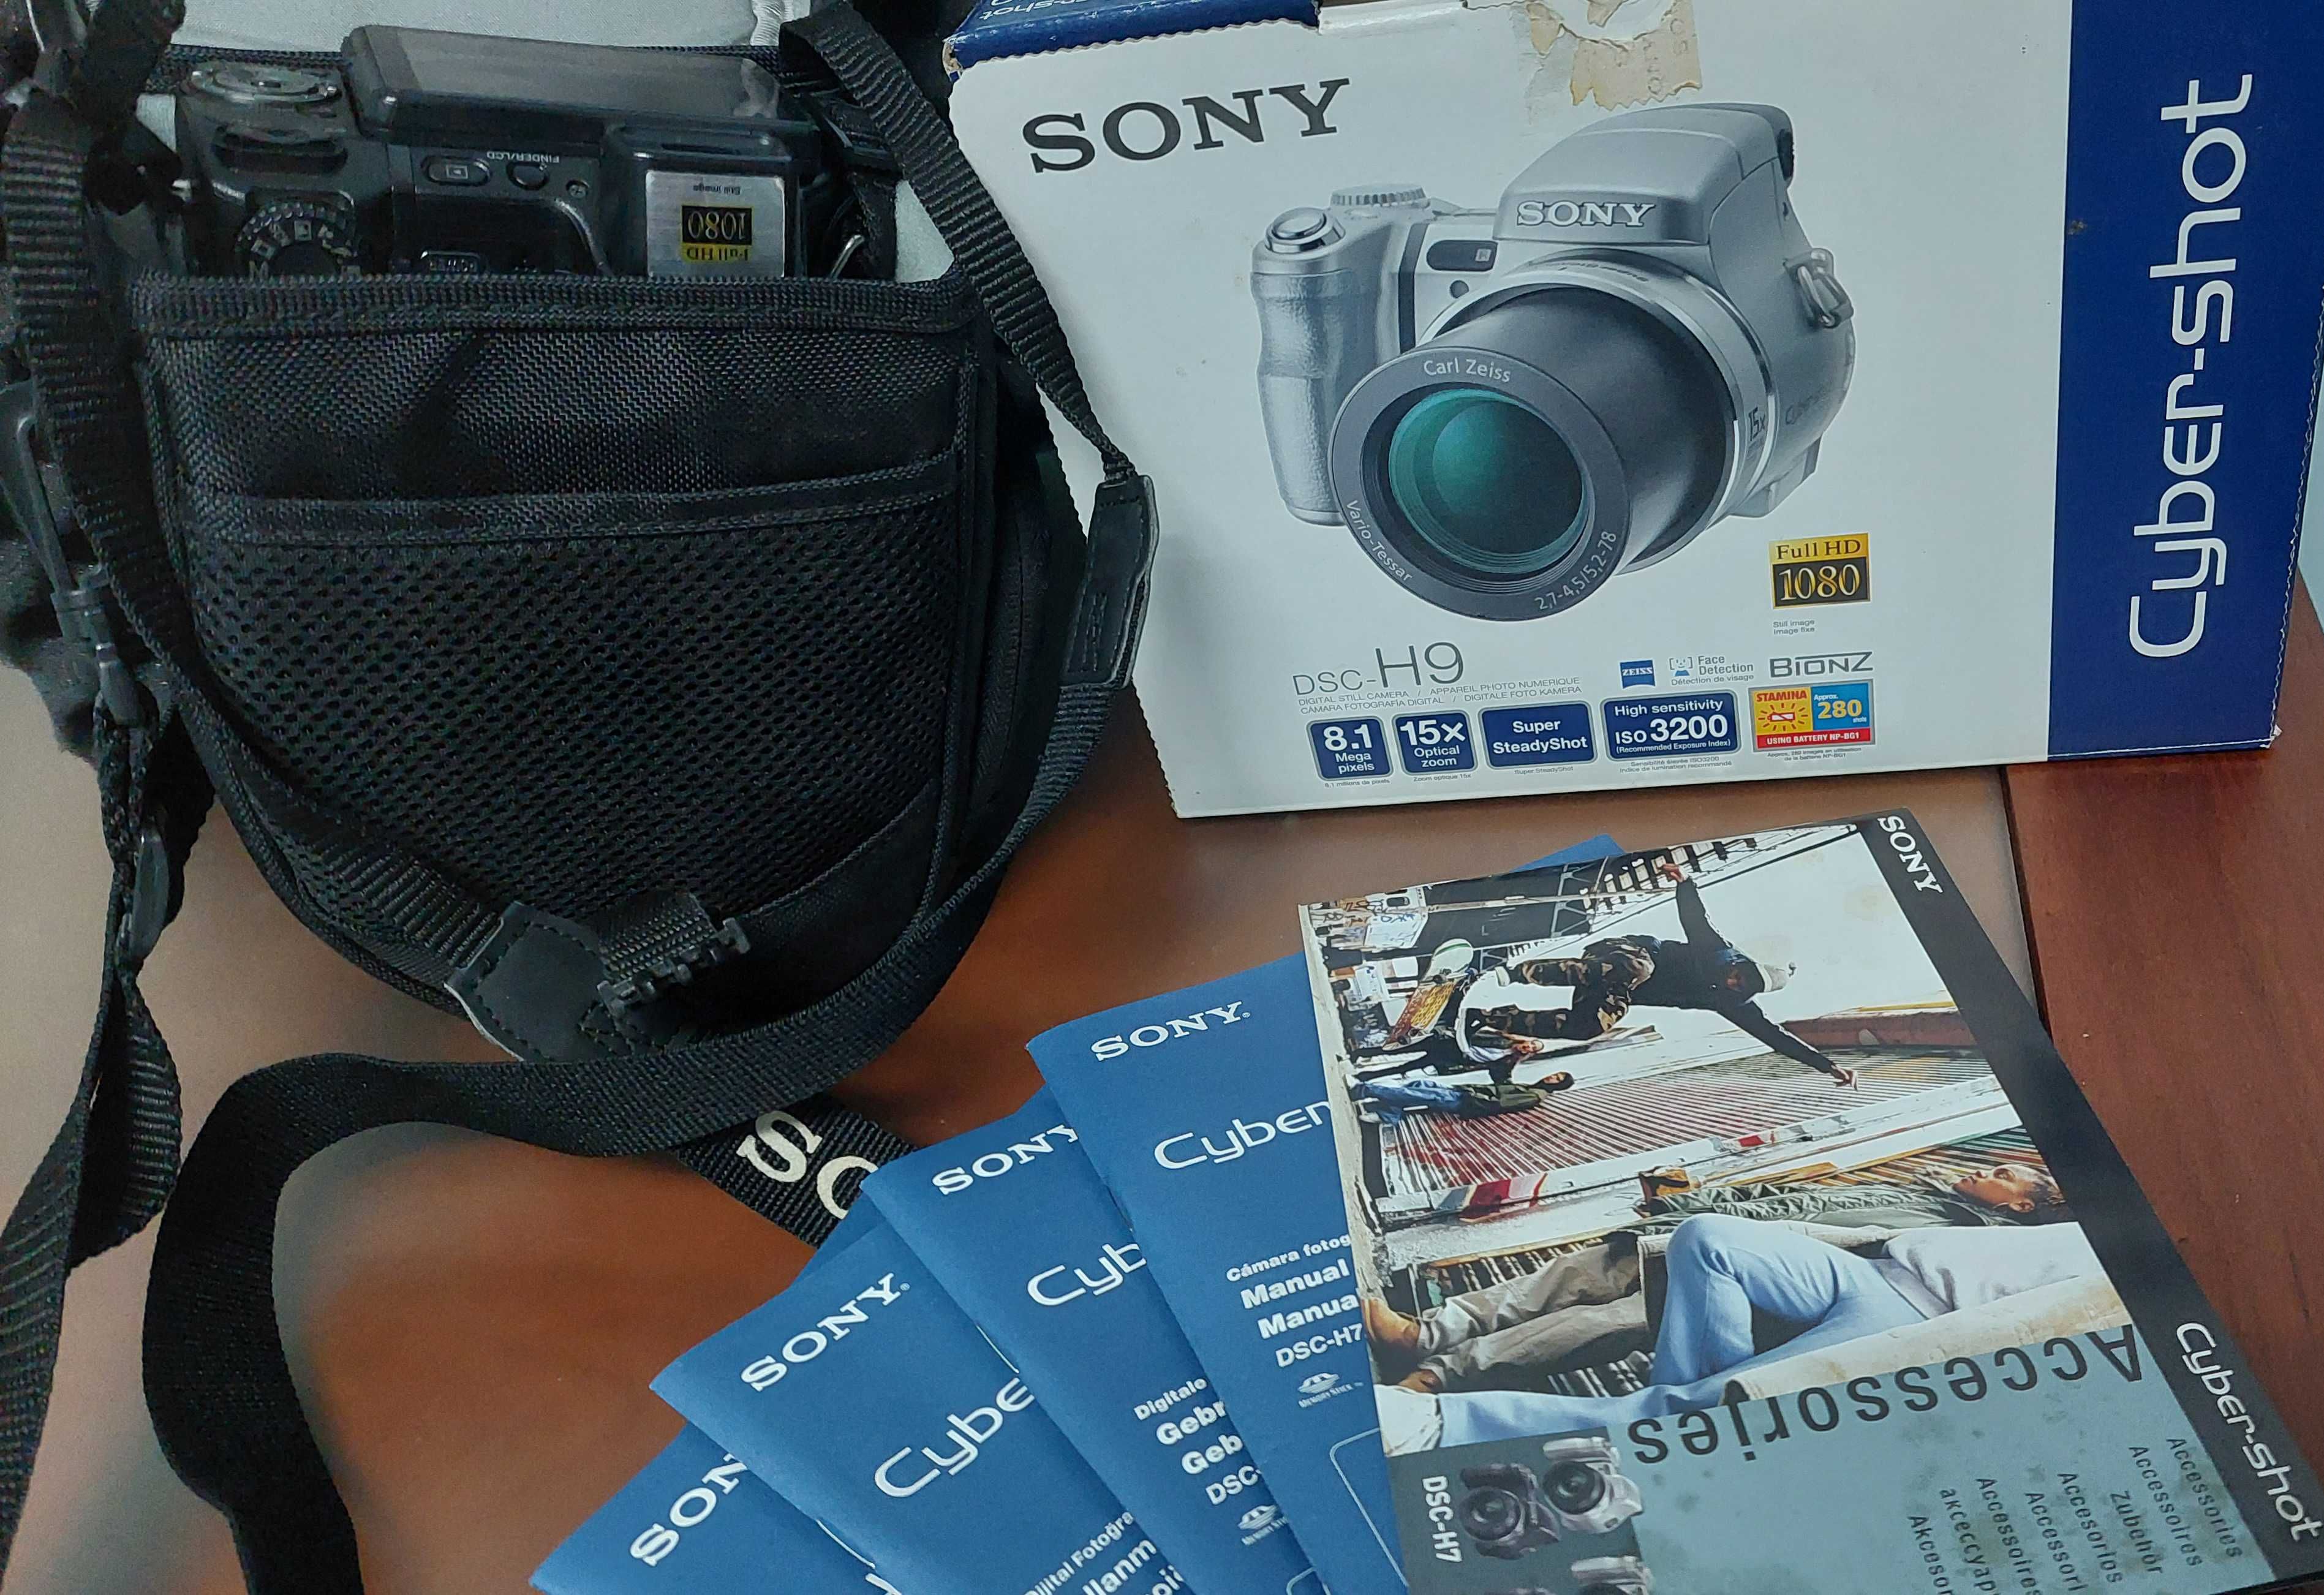 Máquina fotográfica Sony Cyber-shot DSC-H9 1080p com  acessórios